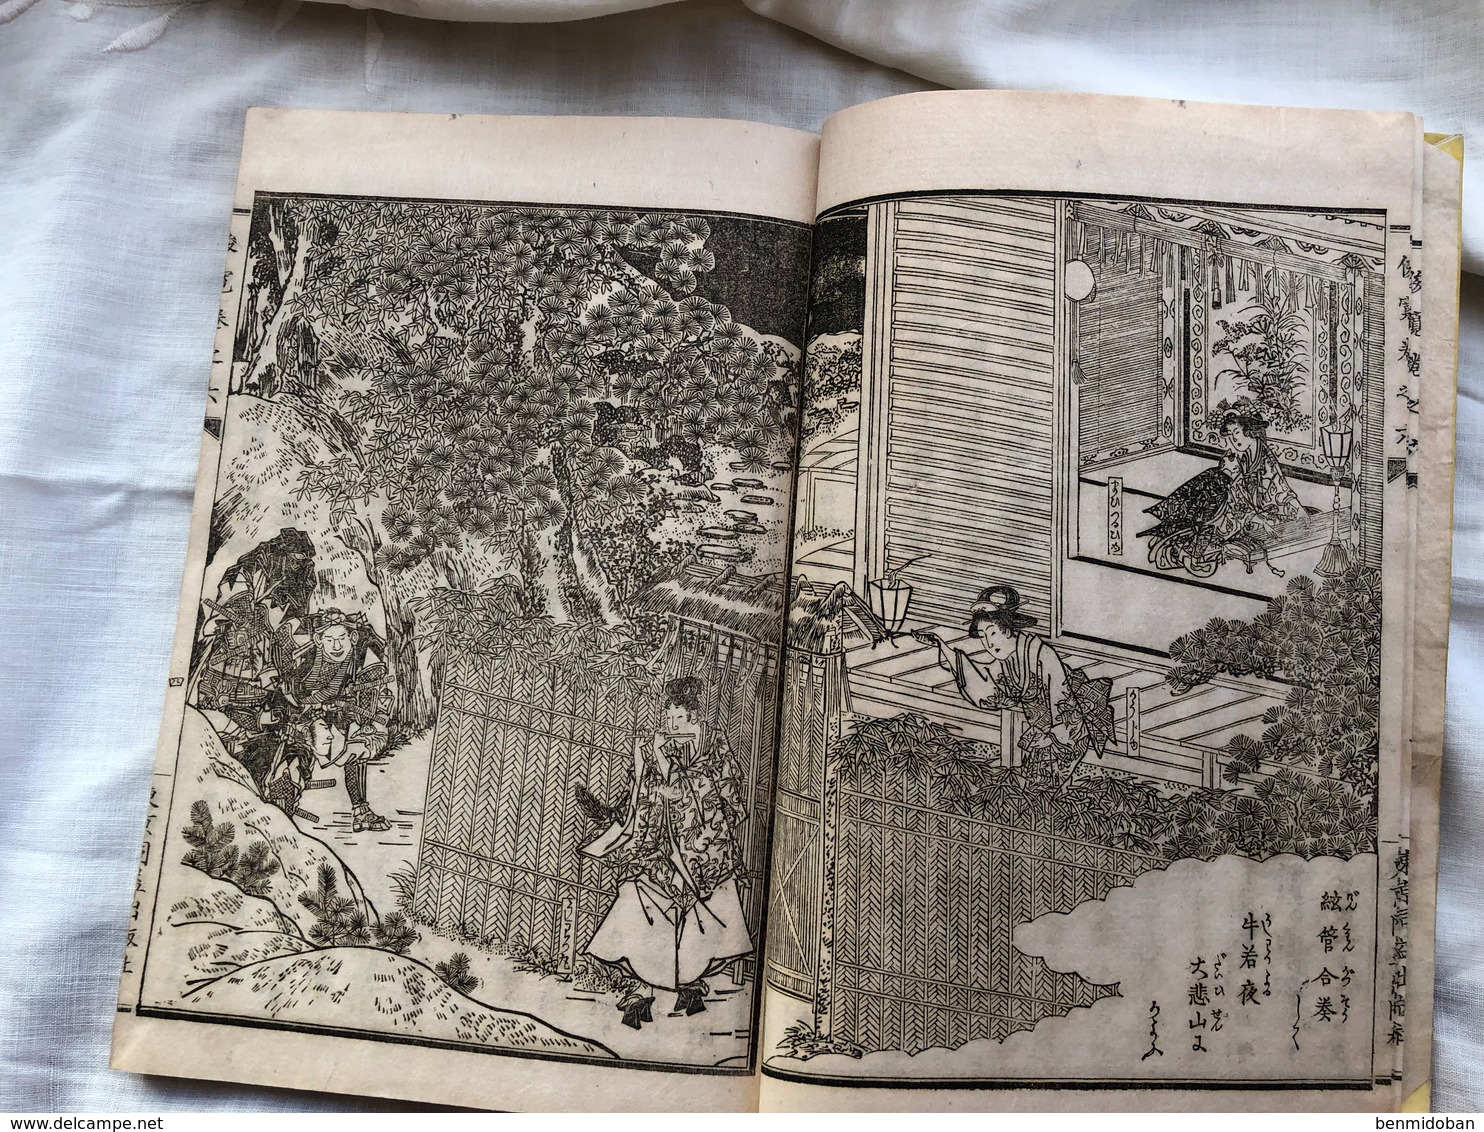 Lot 4 livres anciens japon 1883 magnifique illustrations